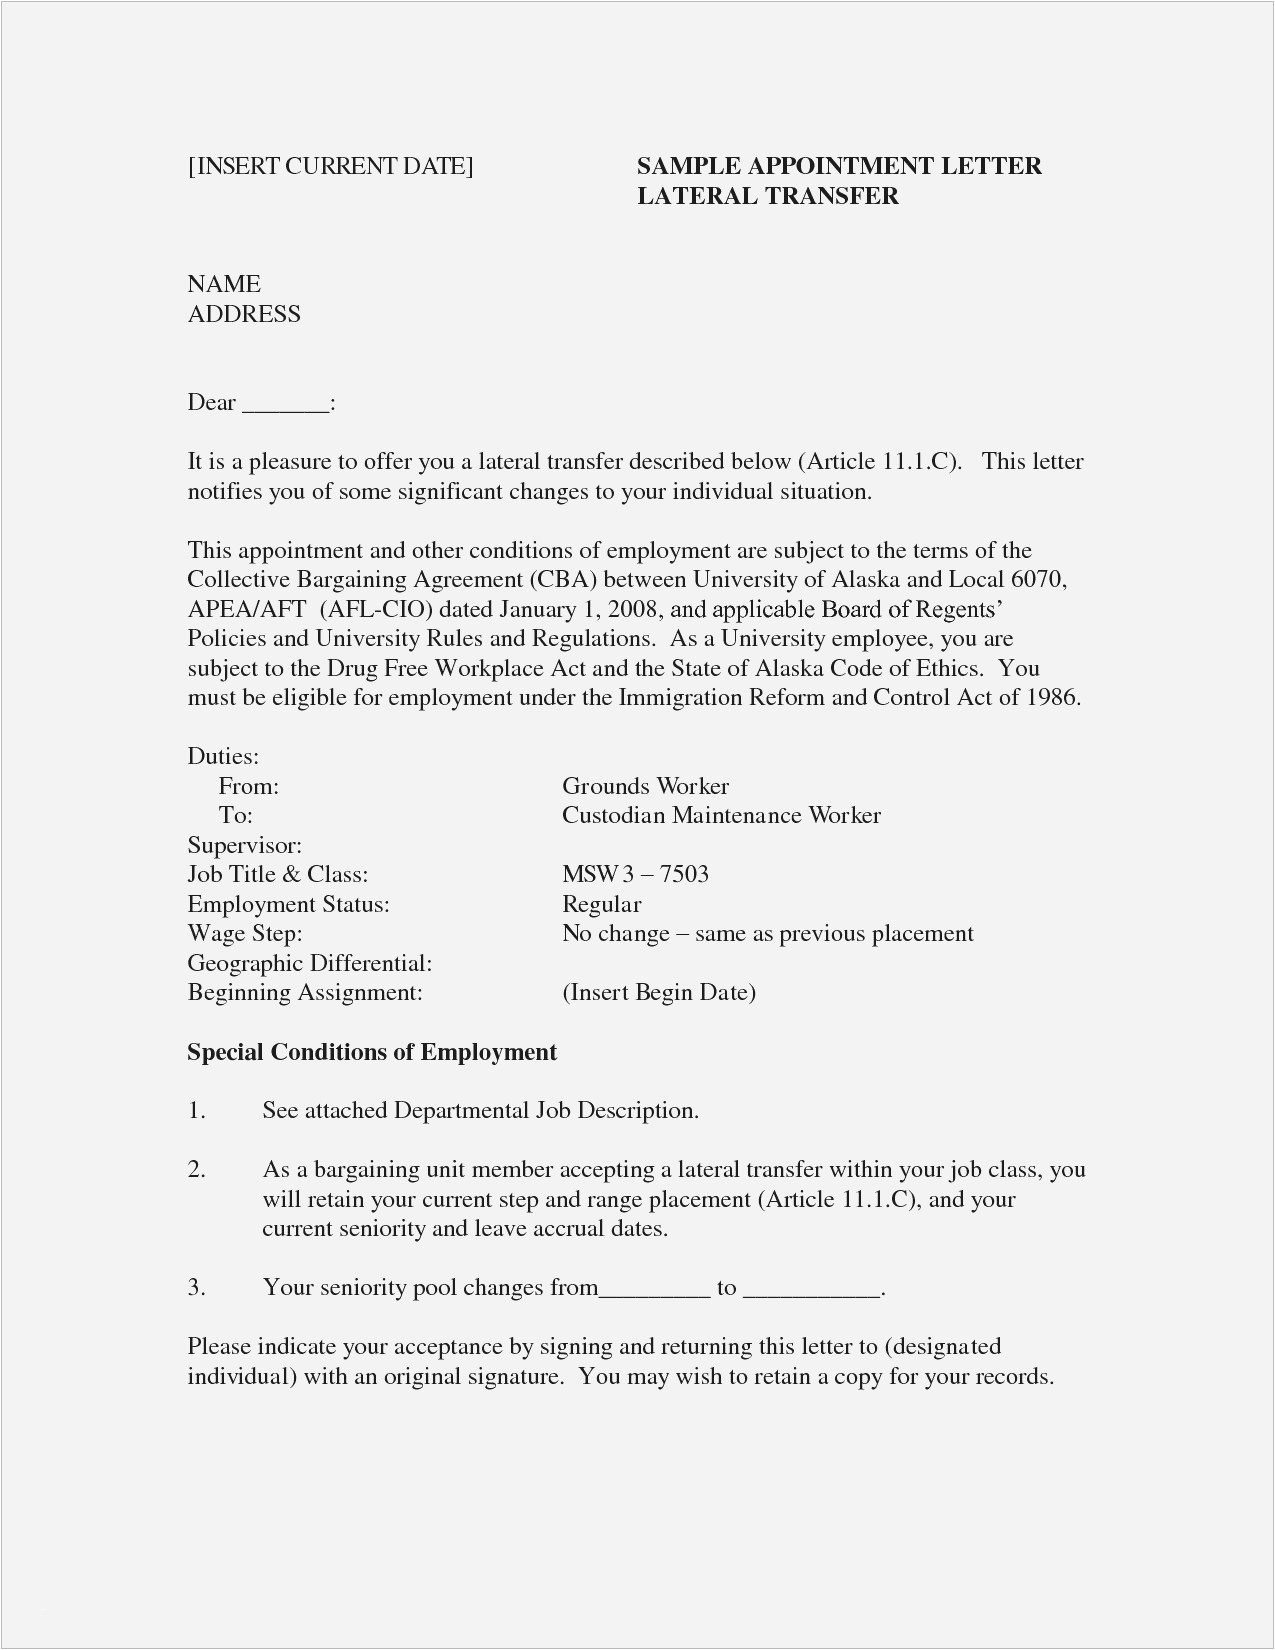 Sample Resume for Restaurant Cashier Position 14 Restaurant Cashier Resume Collection